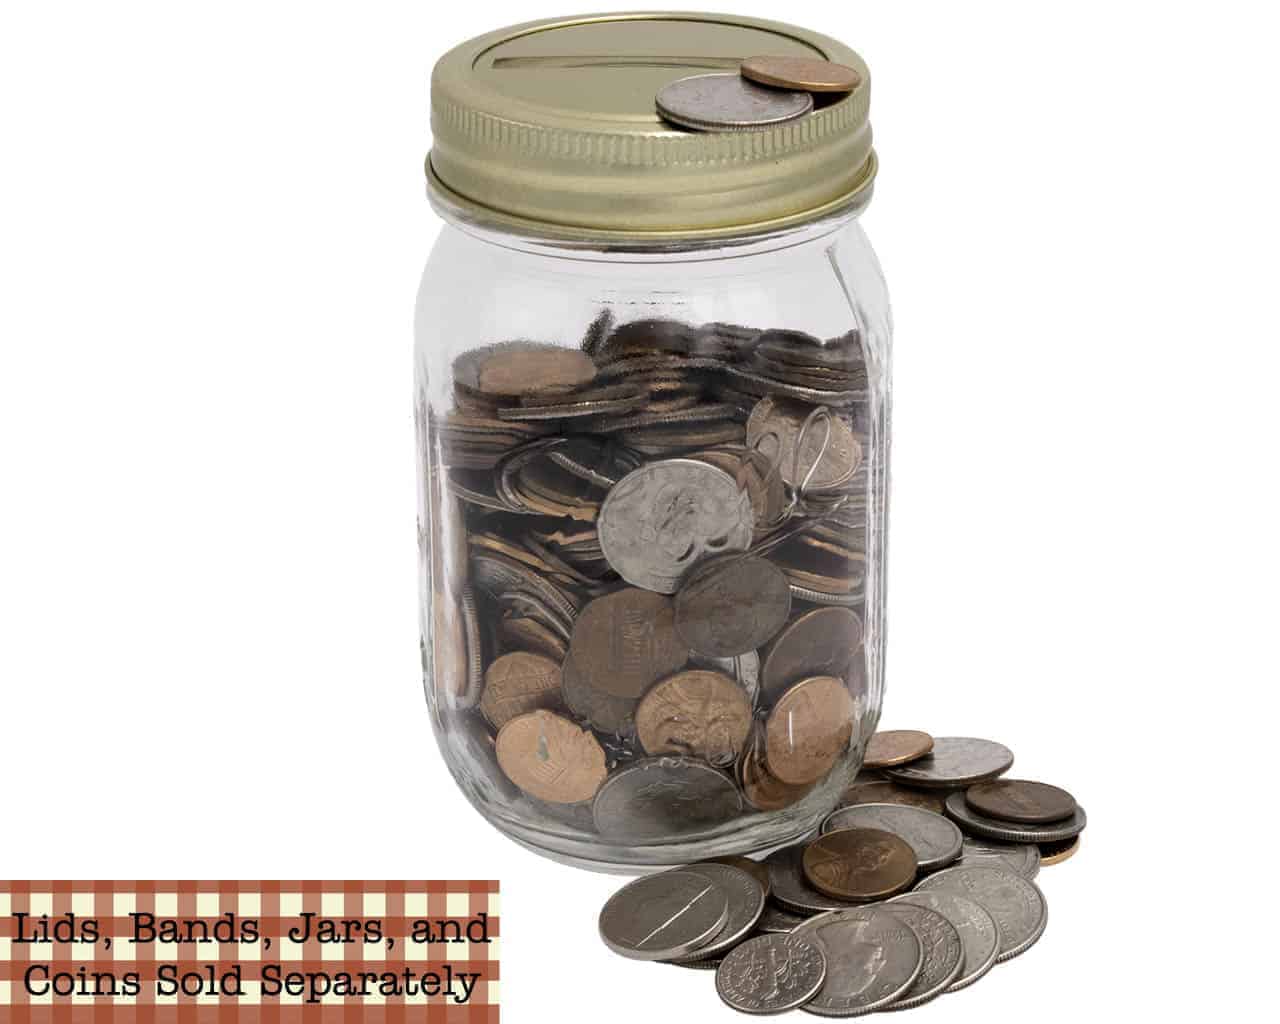 mason-jar-lifestyle-gold-coin-slot-bank-lid-insert-gold-band-regular-mouth-ball-mason-jar-coins